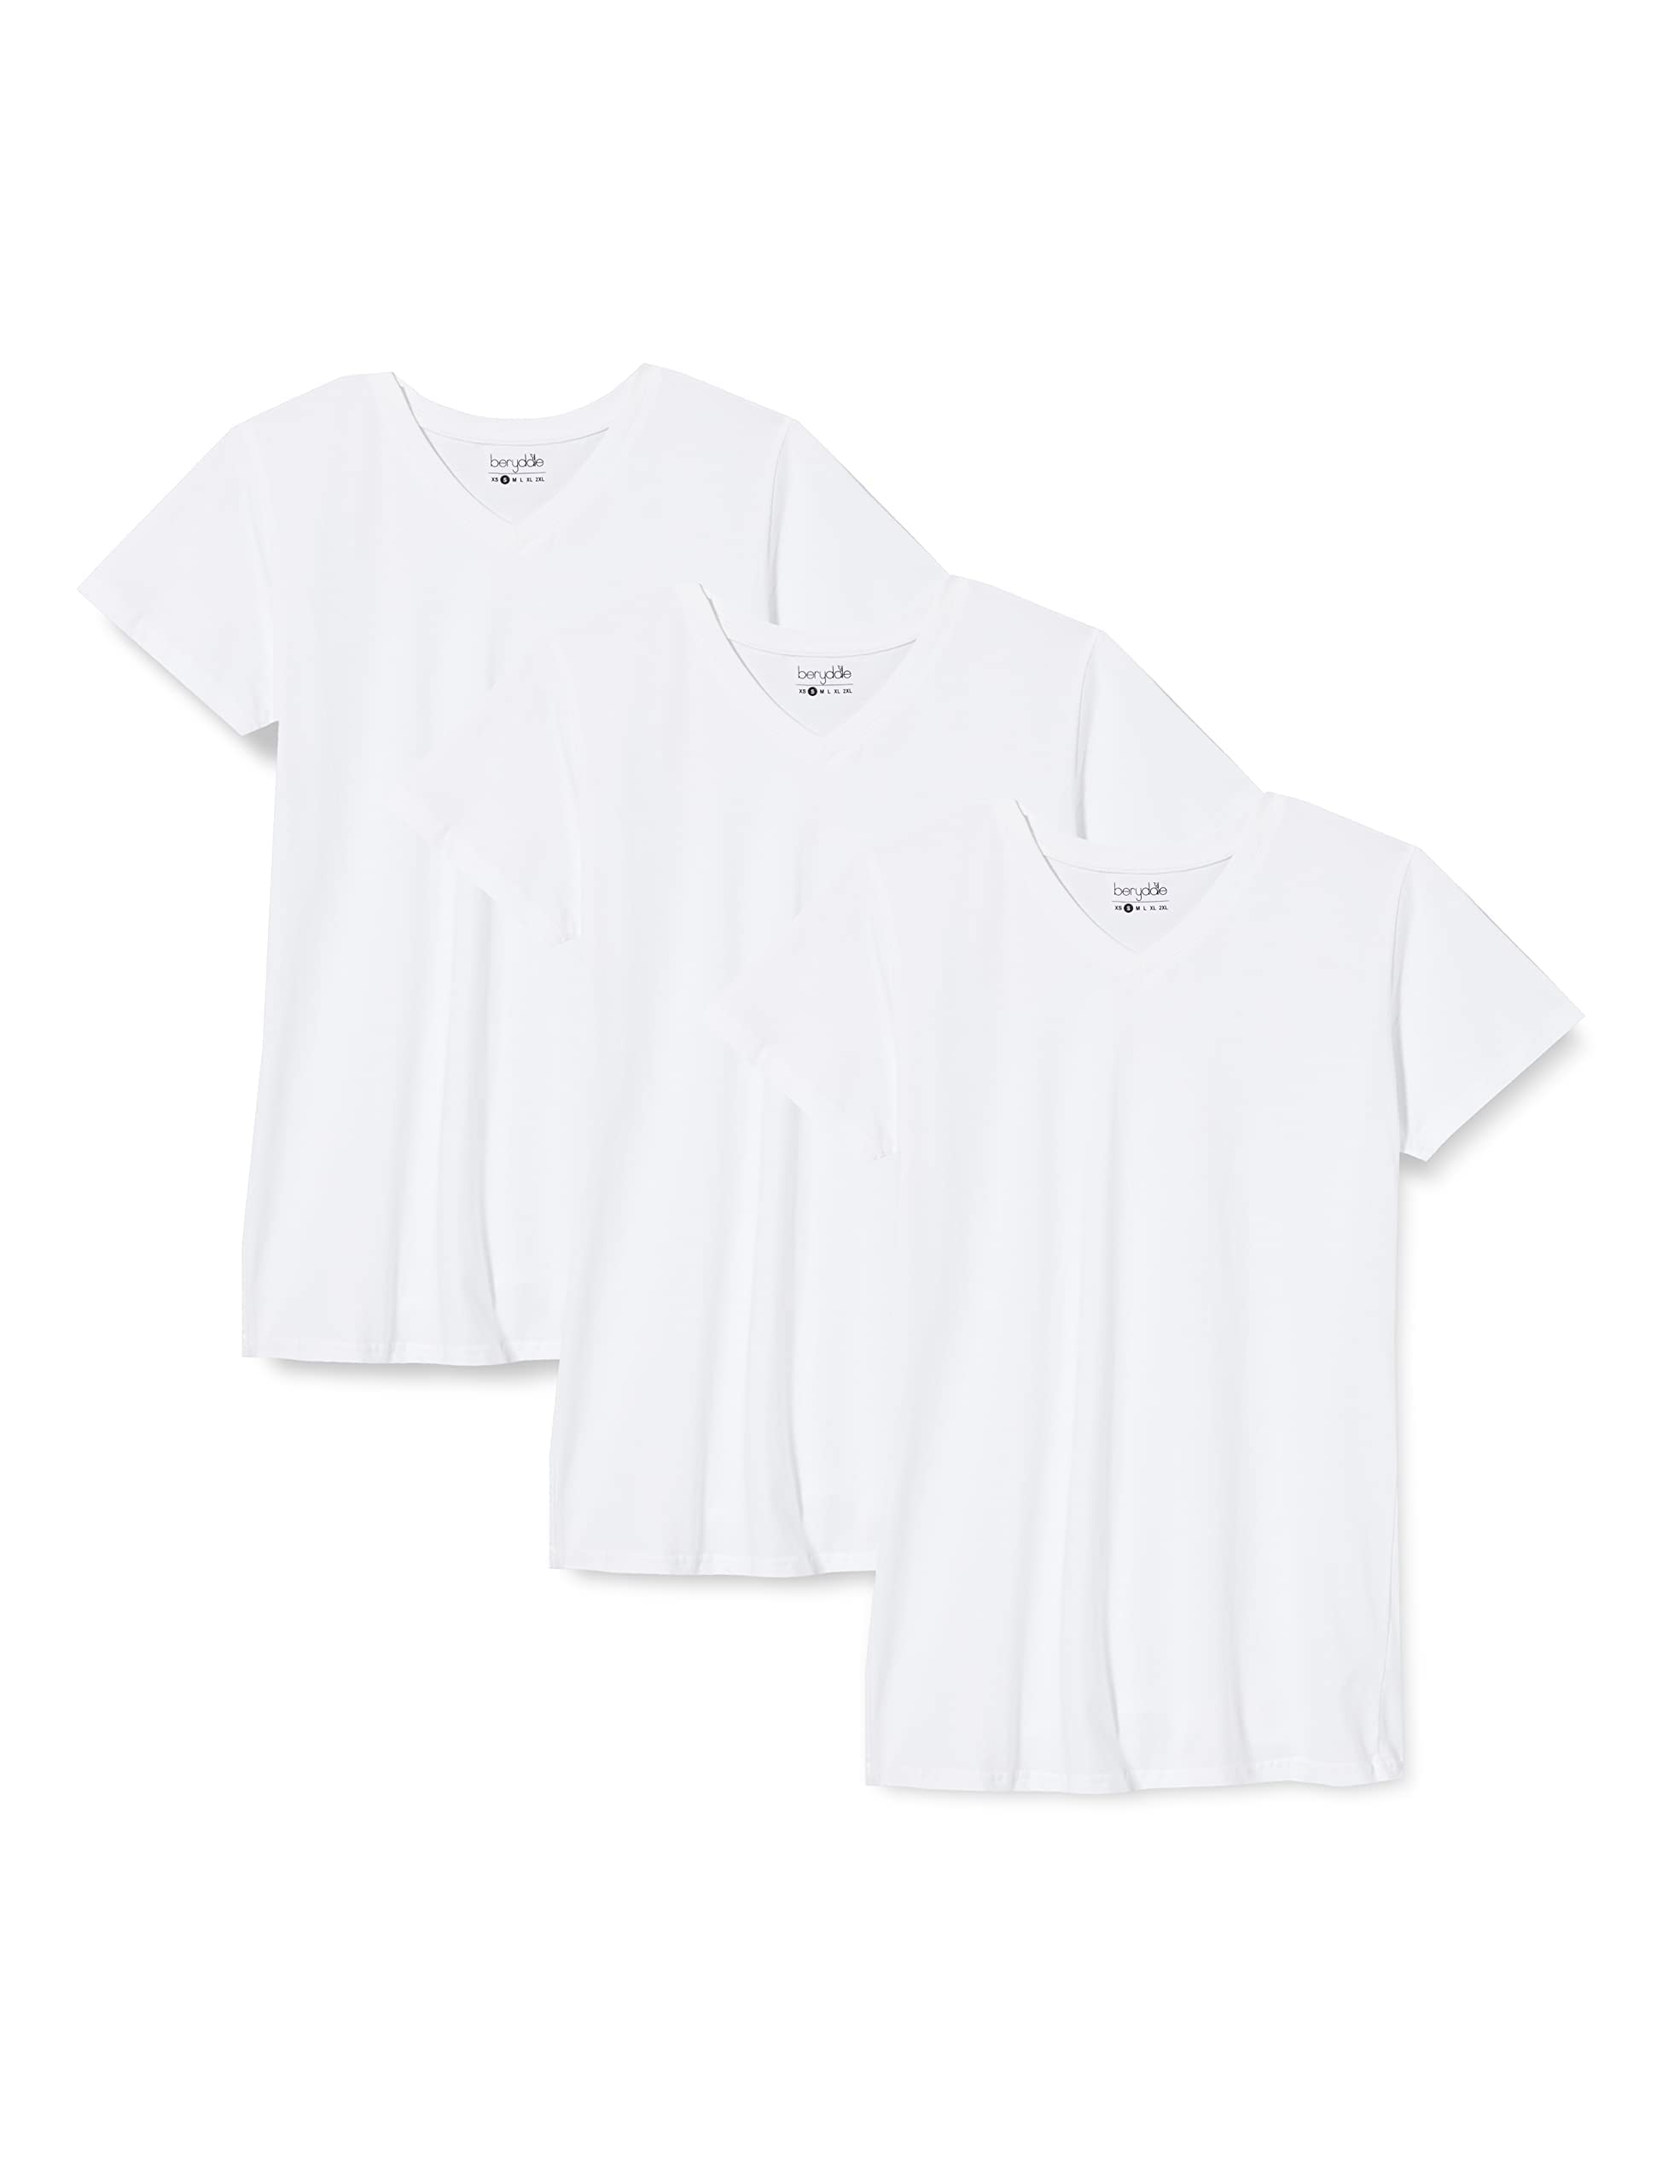 berydale Damen T-Shirt Bd158, Weiß - 3er Pack, XS